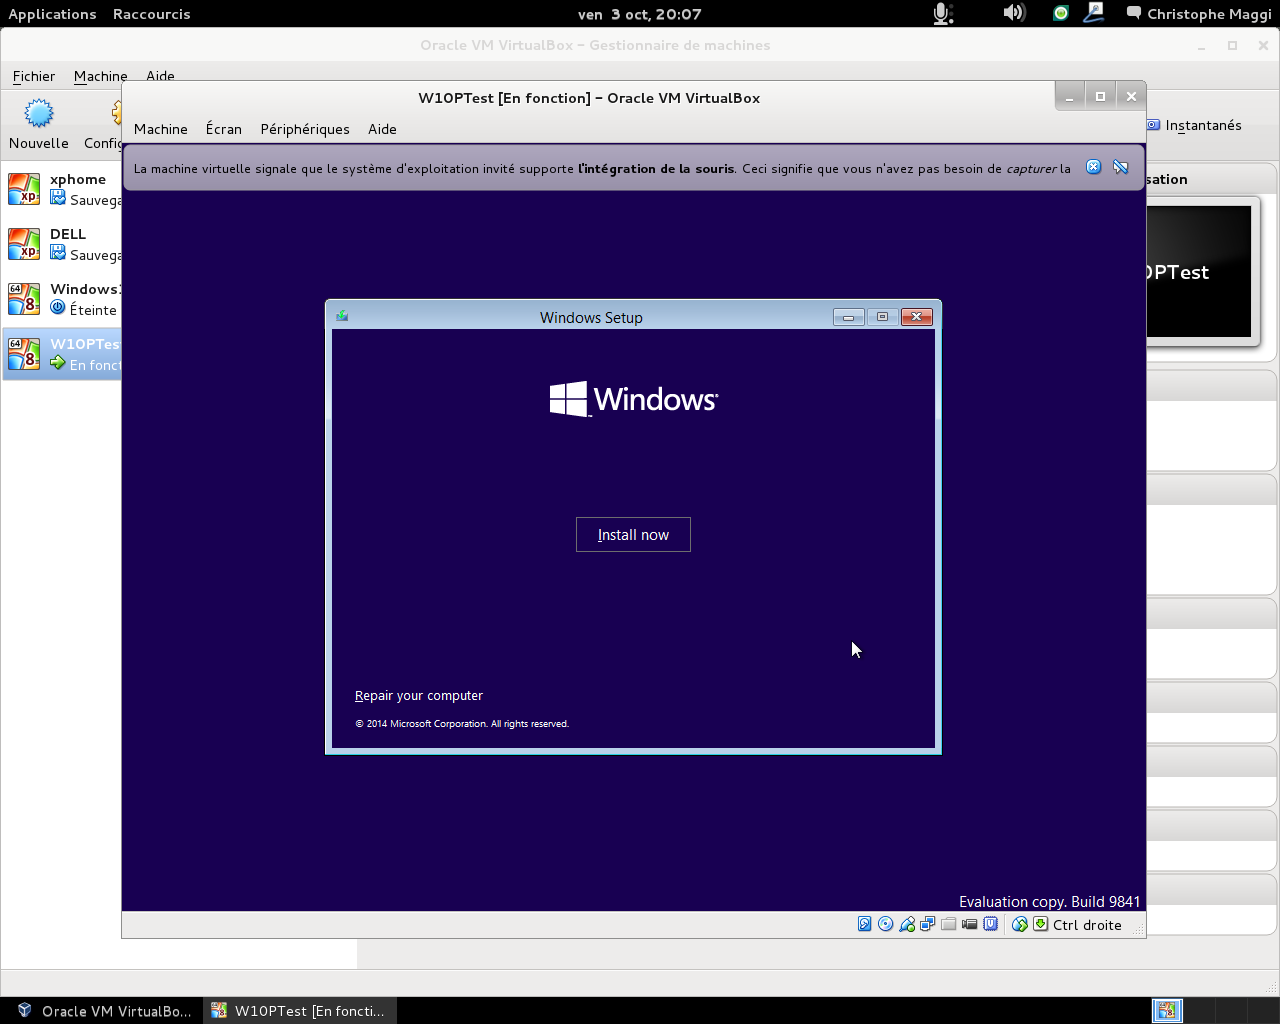 Installer Windows 10 sur une machine virtuelle